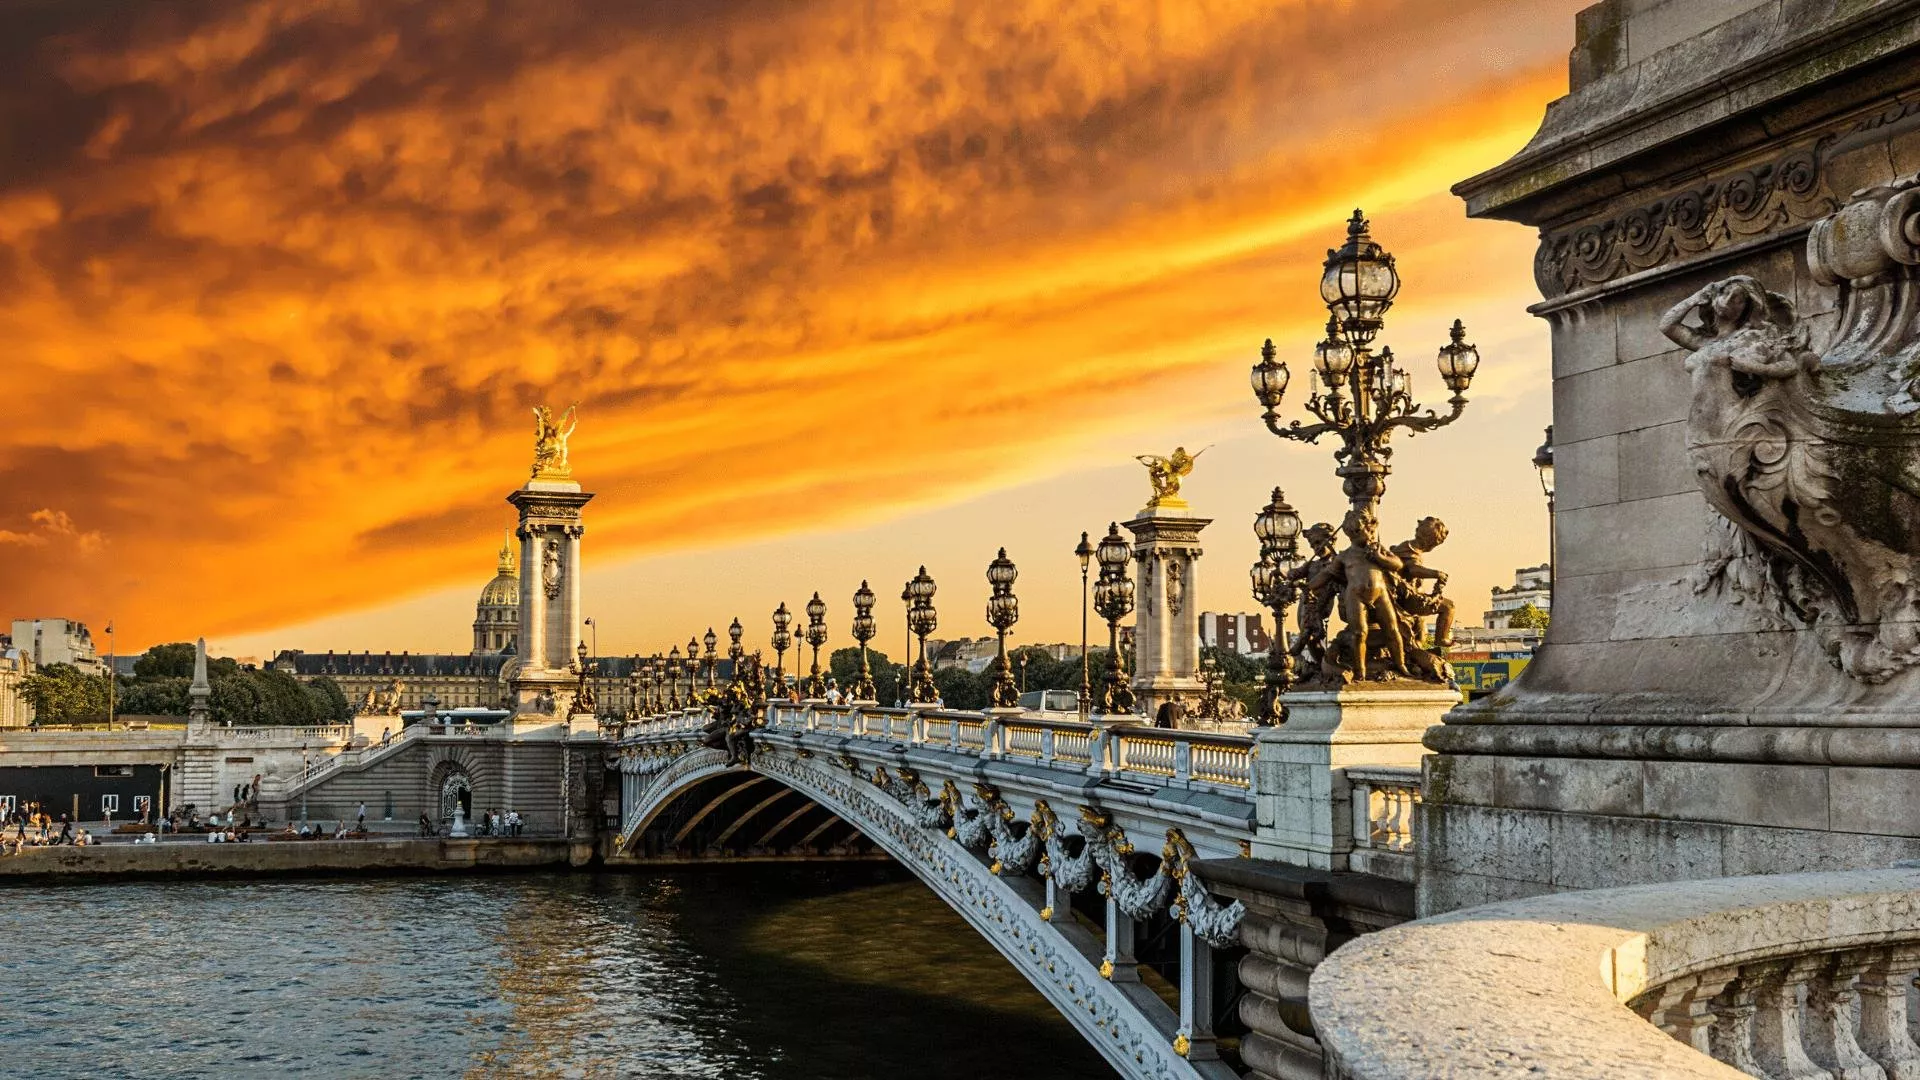 اماكن سياحية في فرنسا برزت في مسلسل ايميلي في باريس، زوريها وعيشي التجربة!